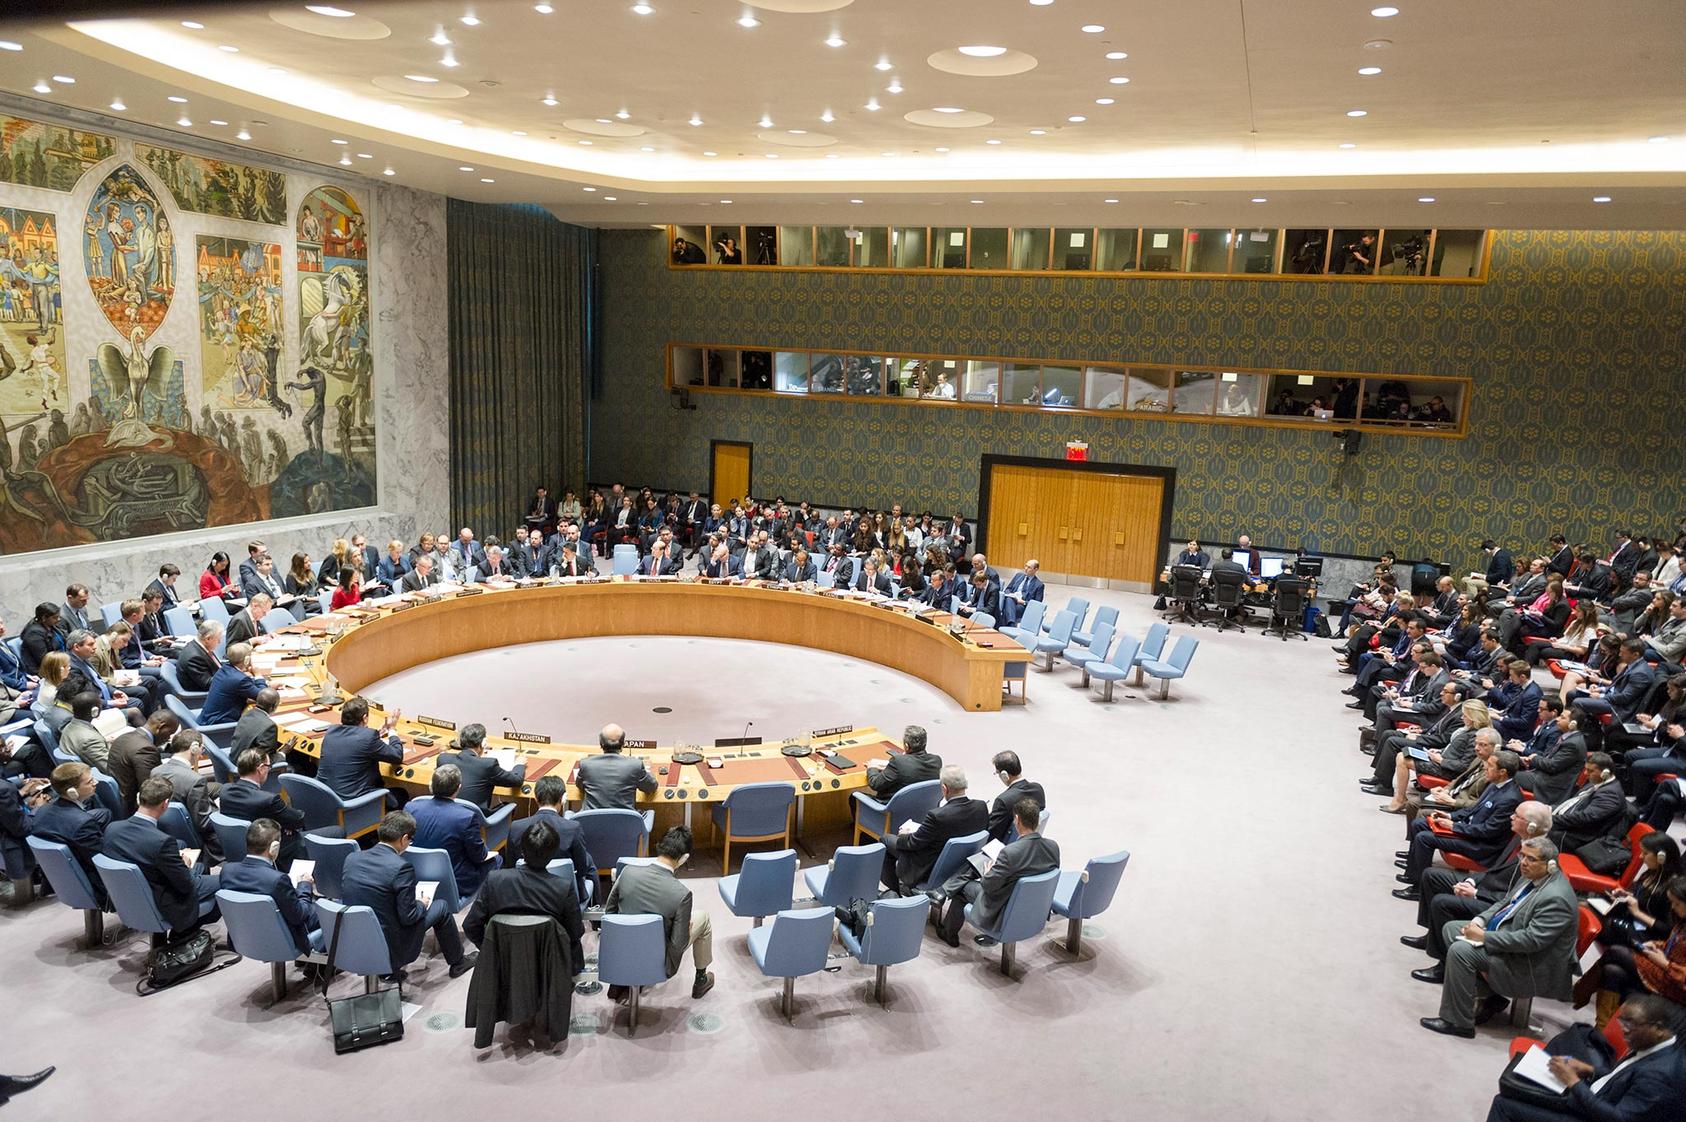 UN Security Council meeting. Photo courtesy of the UN.